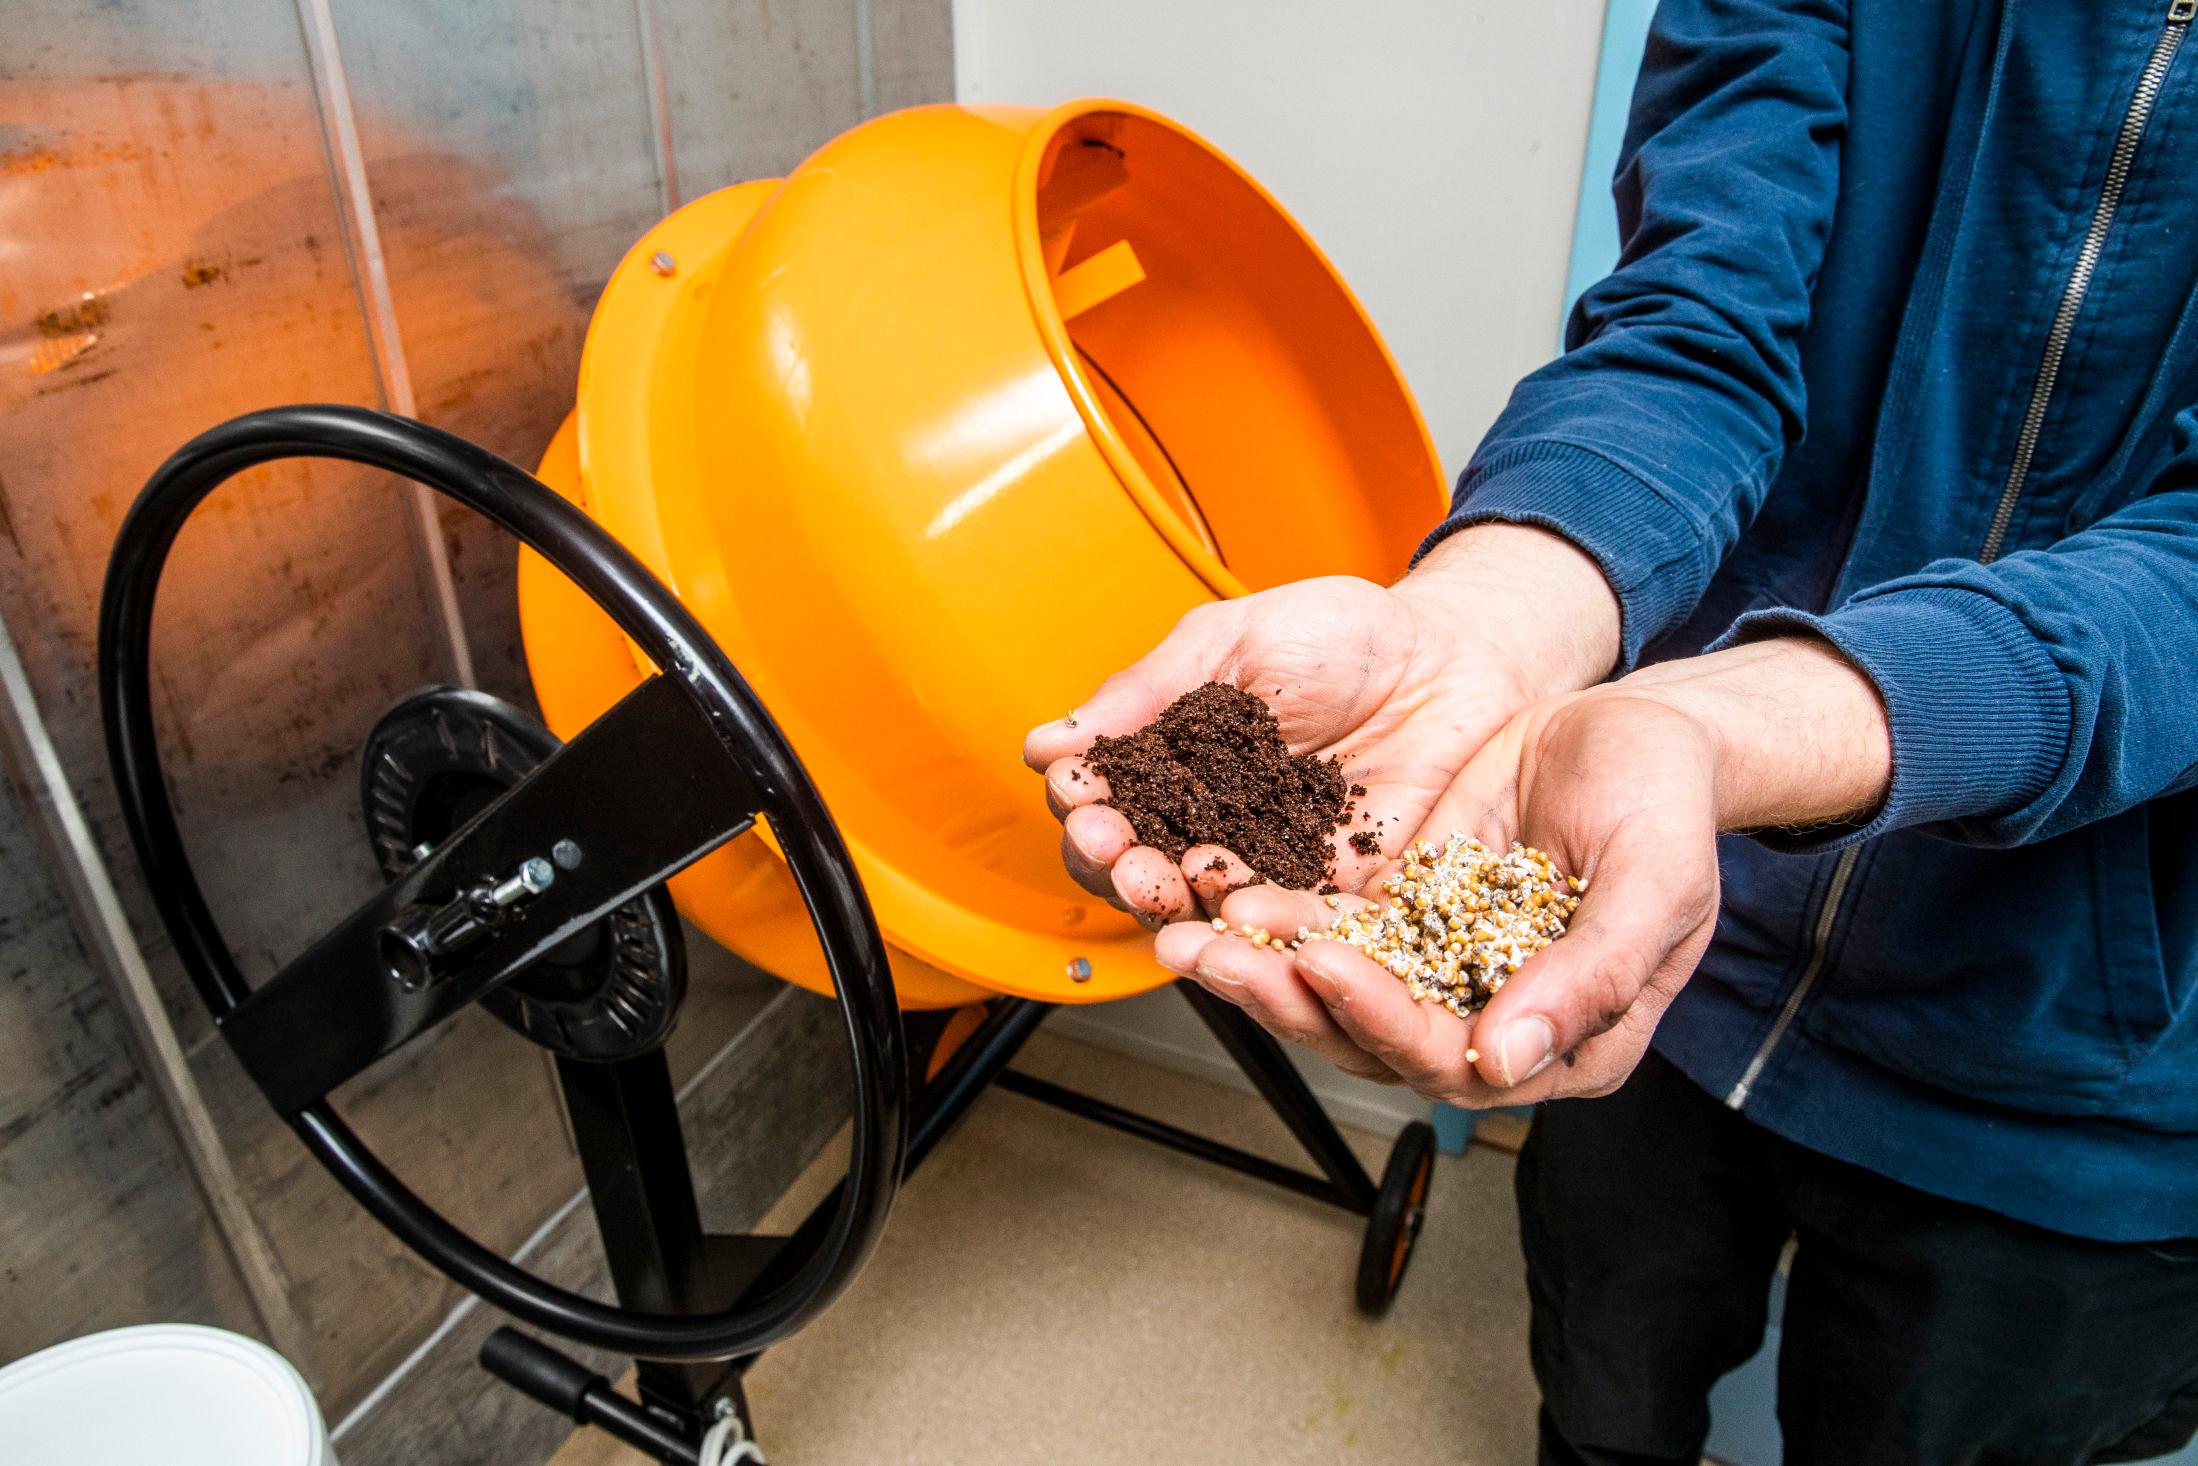 TO INGREDIENSER: Kaffegruten og soppmycelet blandes sammen i en betongblander før soppen kan begynne å gro. Foto: Frode Hansen/VG